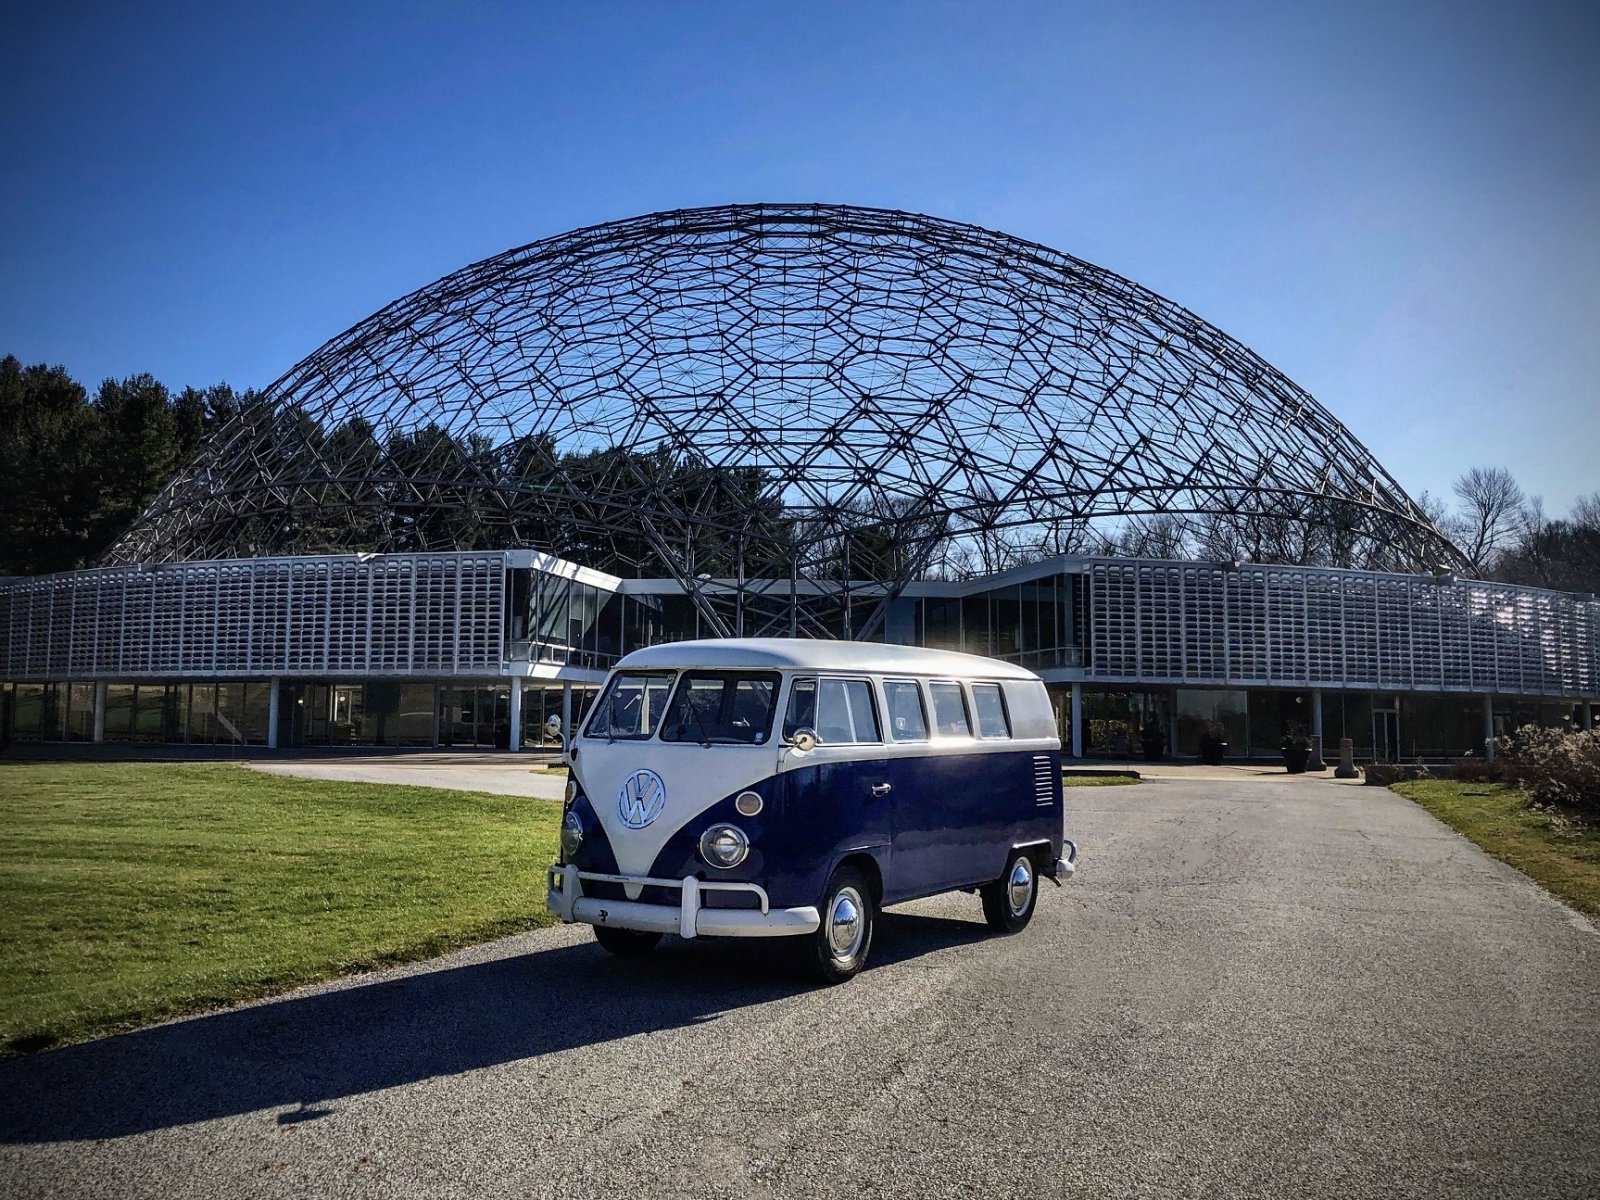 1966 Volkswagen Transporter (Van)